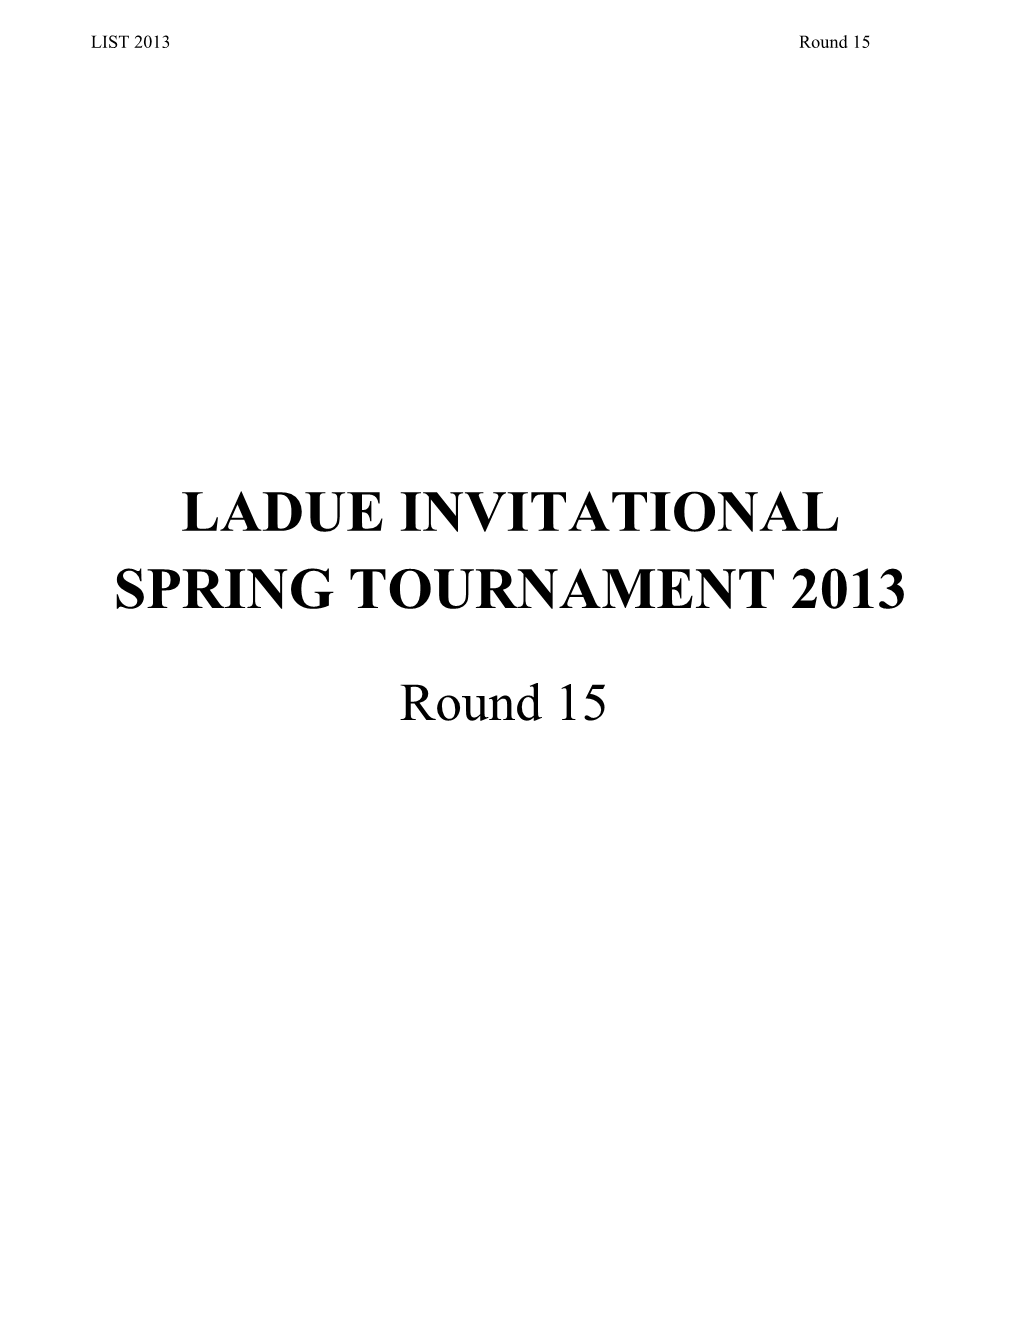 Ladue Invitational Spring Tournament 2013 s1